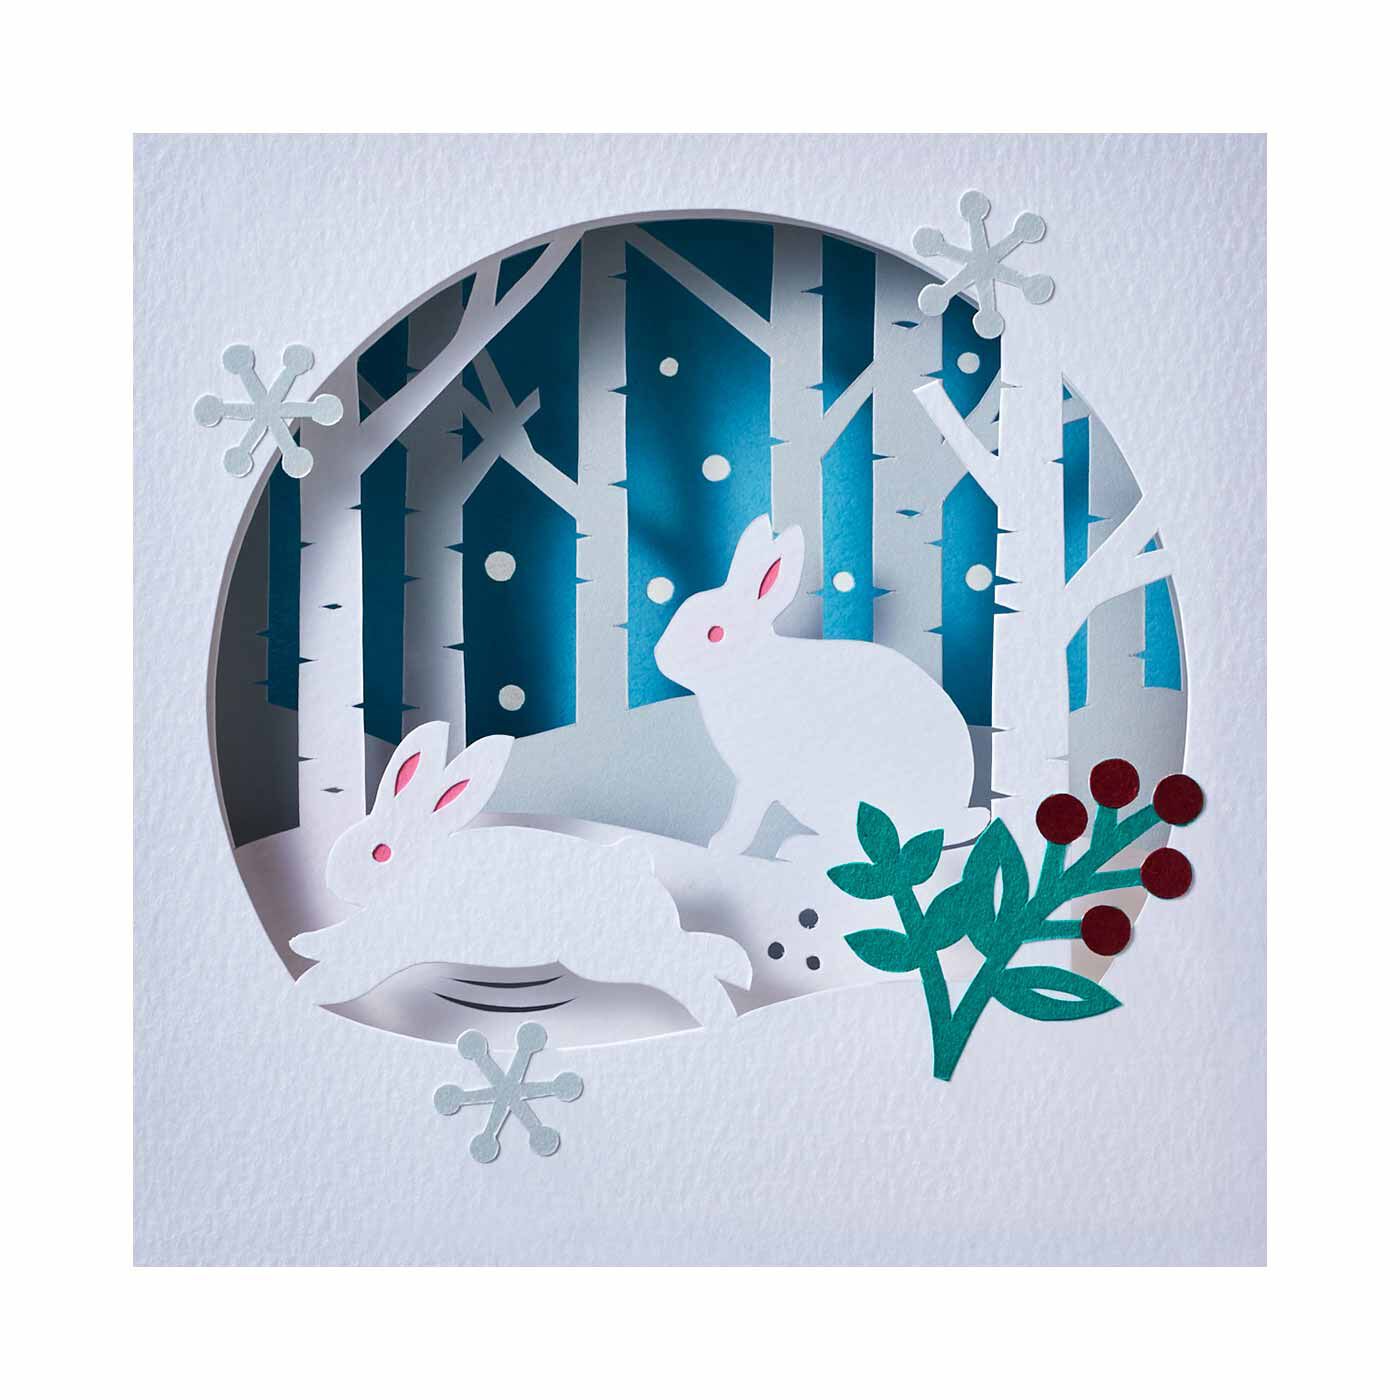 クチュリエ|双眼鏡でのぞいた森の風景 紙の重なりで切り絵を楽しむペーパーアートの会|ウサギの雪遊び